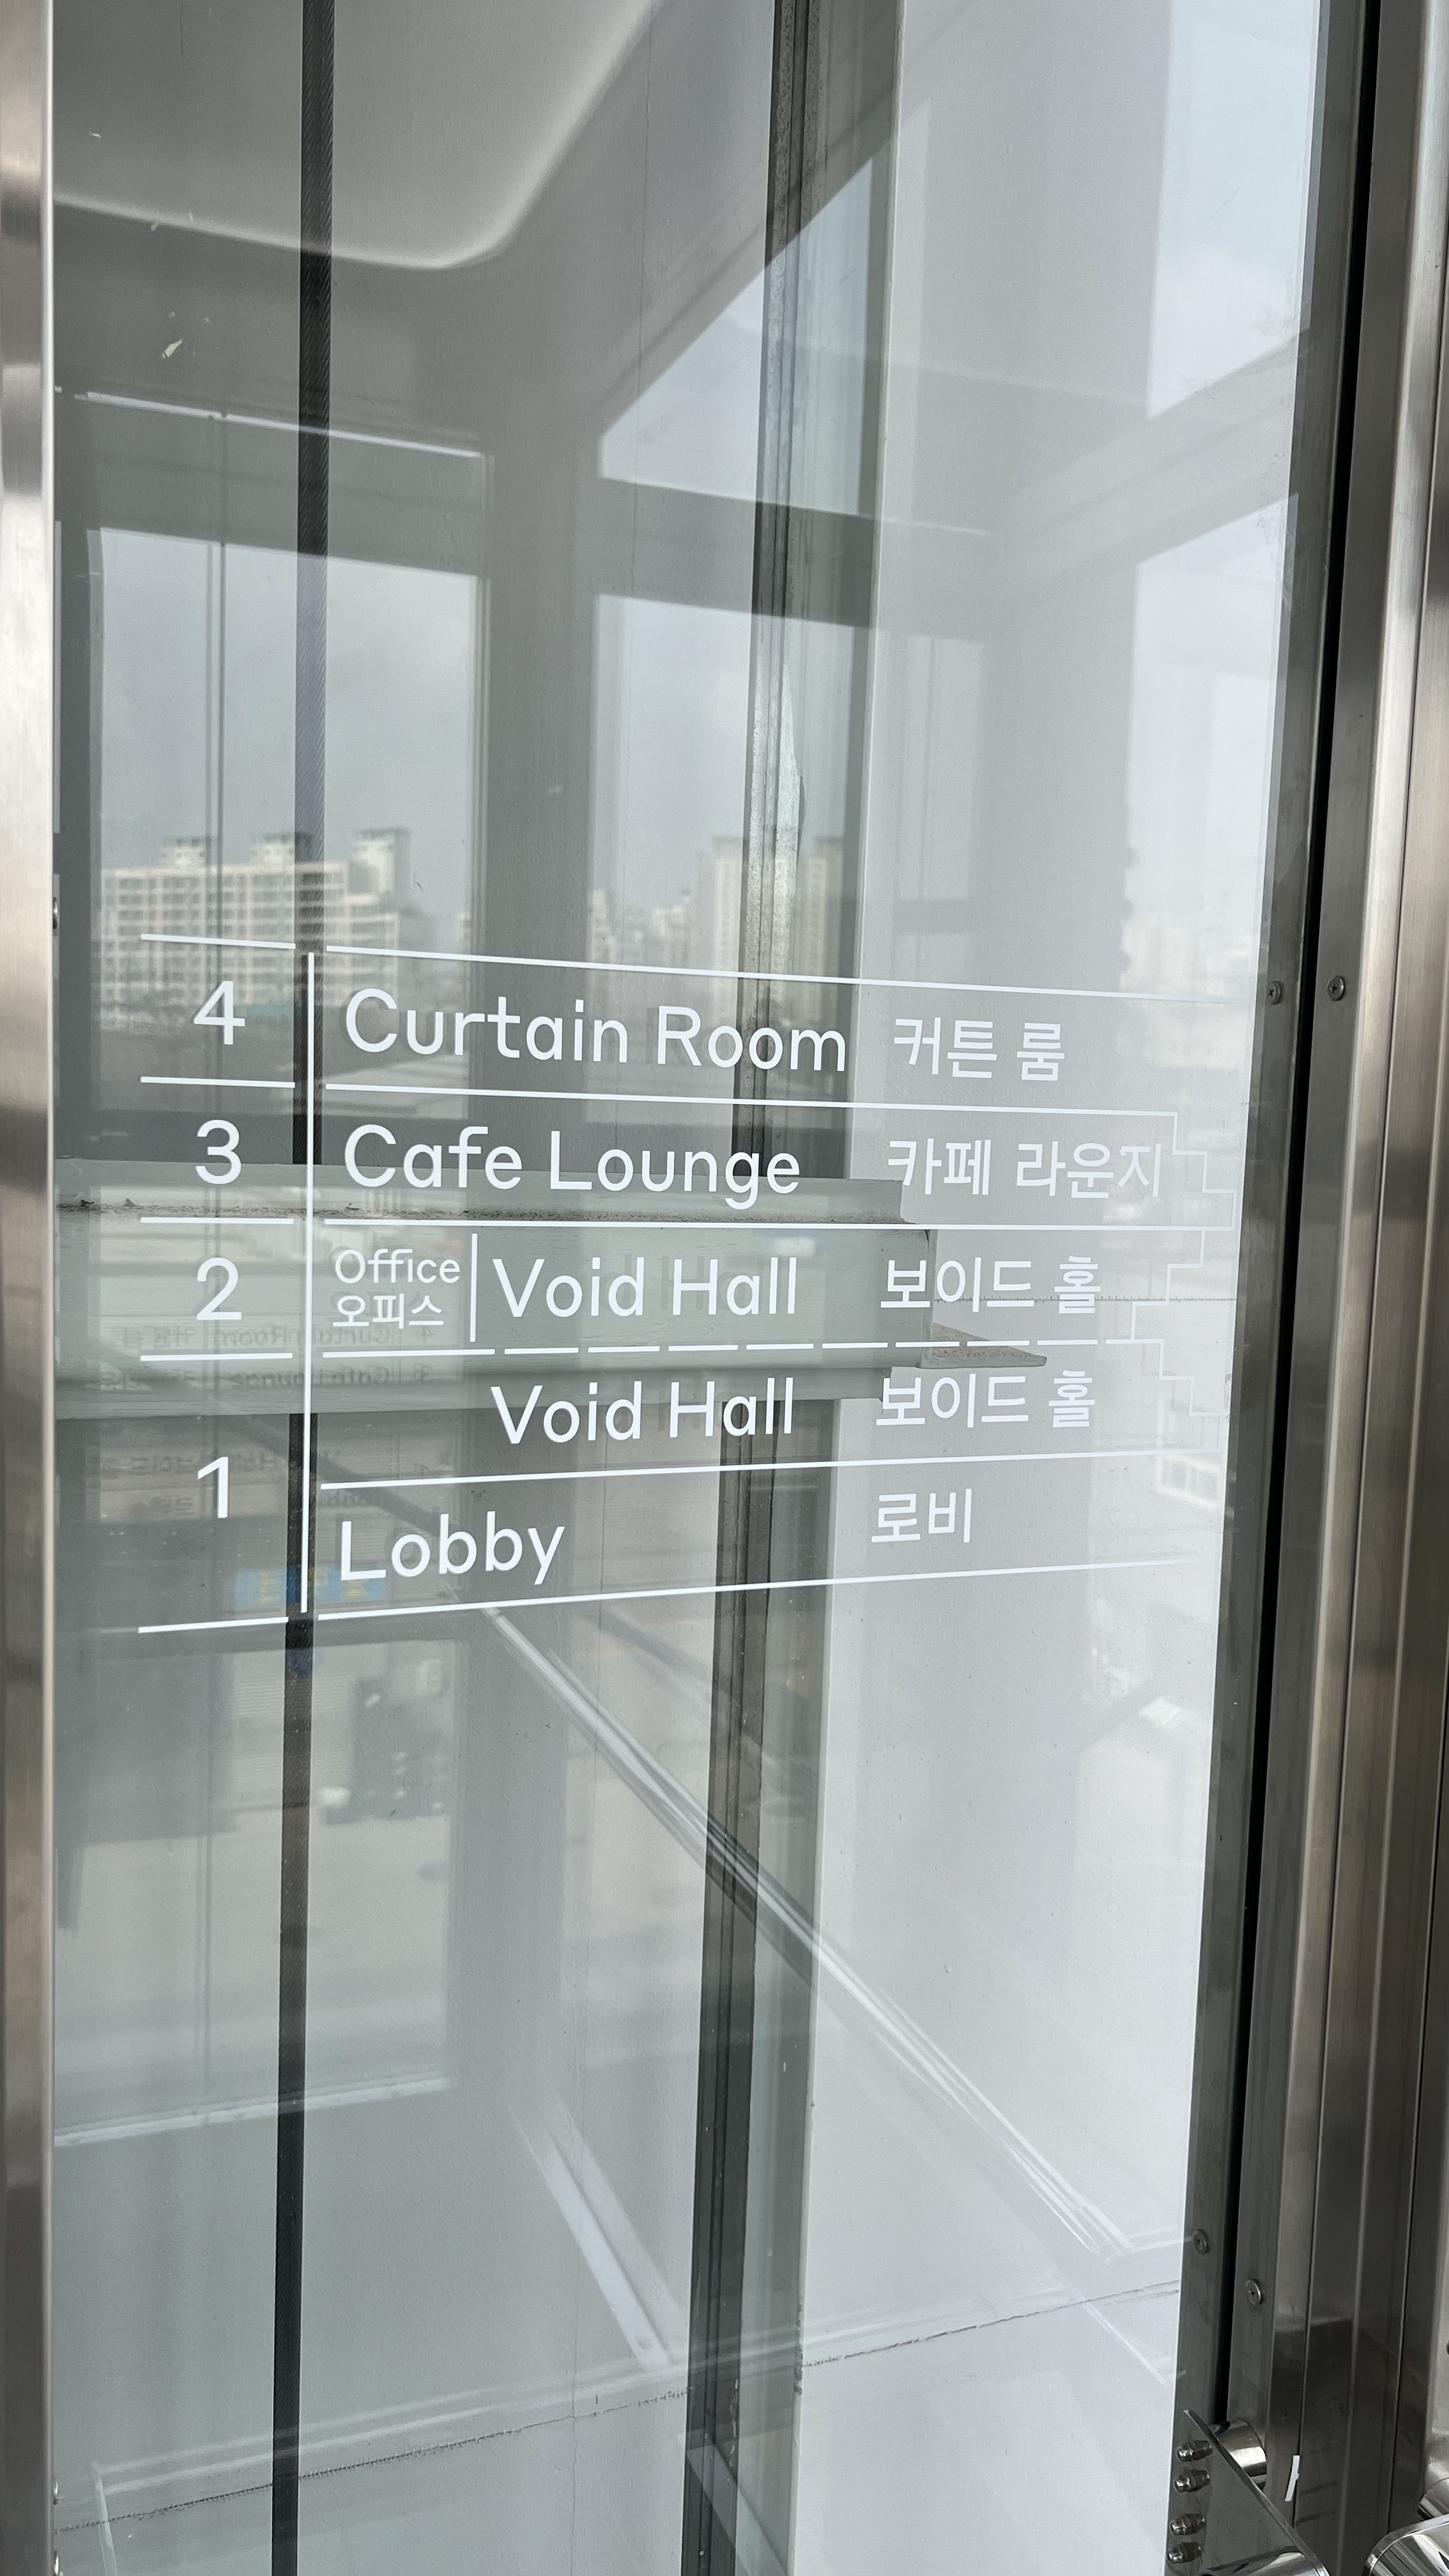 코스모40 엘리베이터에 있는 층별 안내표시이다